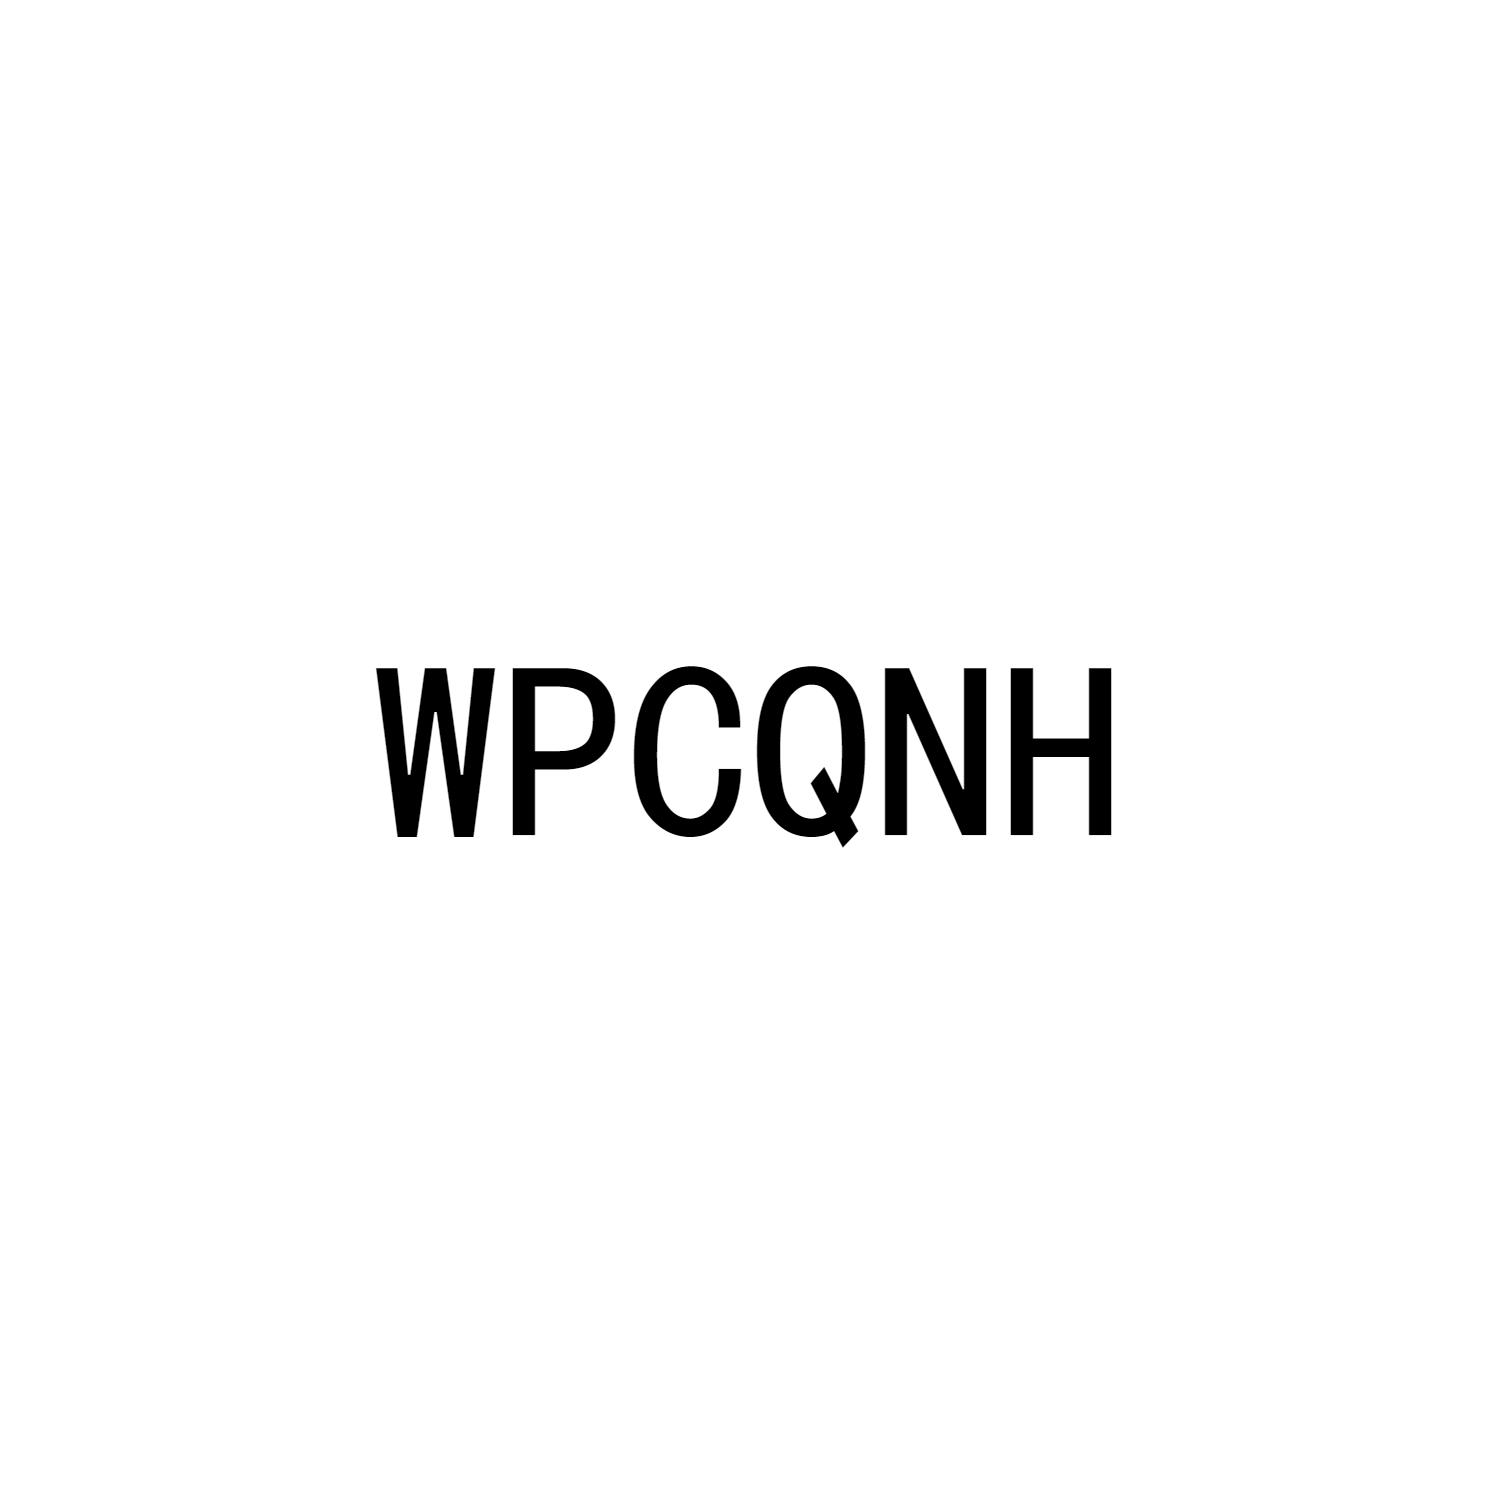 WPCQNH